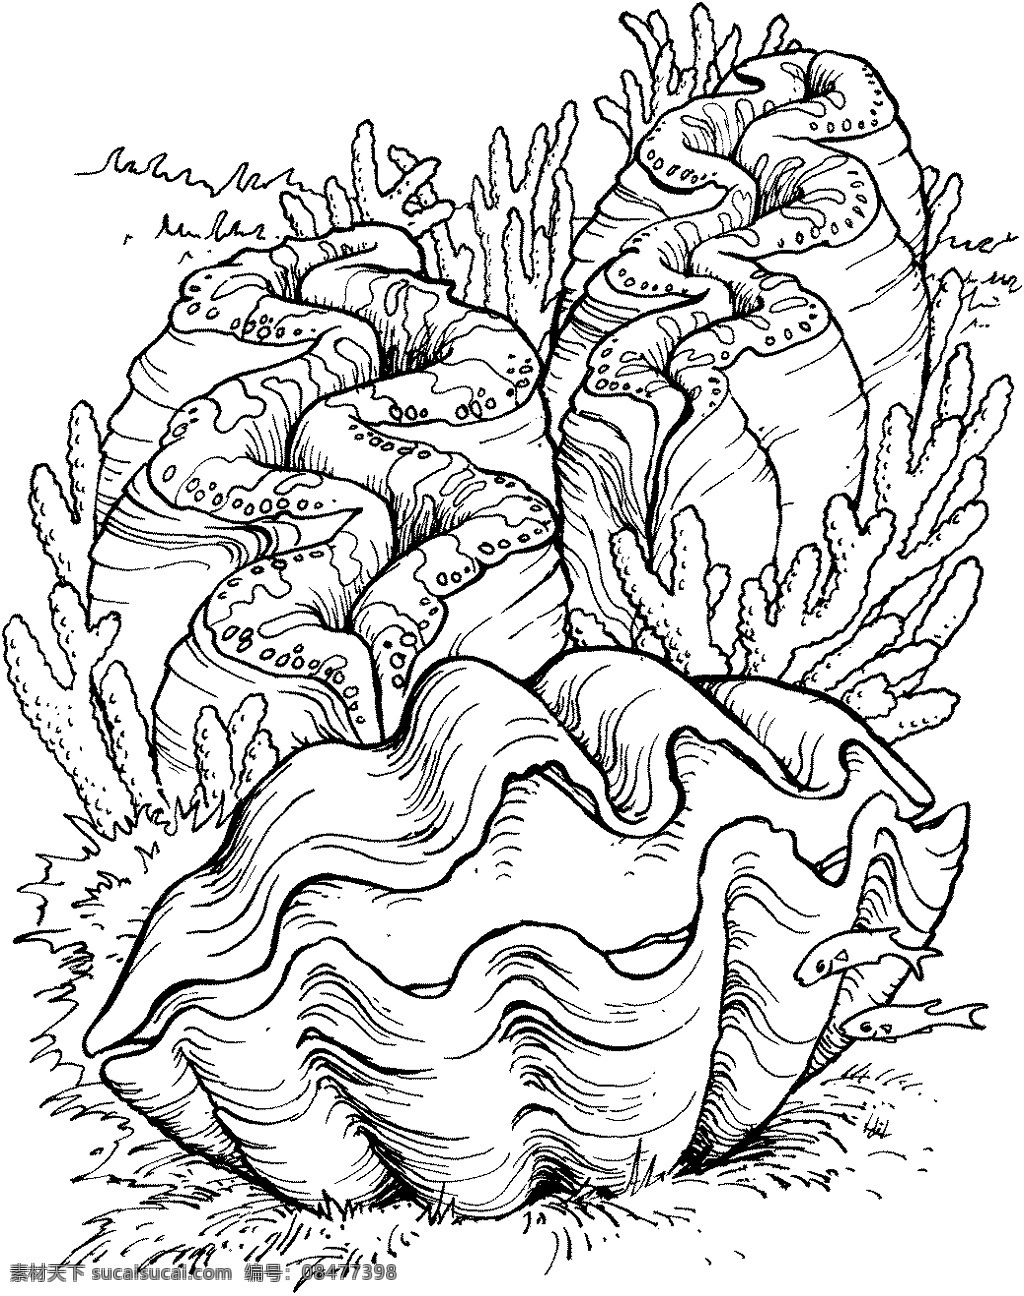 海贝 海螺 海贝海螺 动物素描 海洋生物 动物素材 海洋 动物 手绘 画 设计素材 动物专辑 素描速写 书画美术 白色